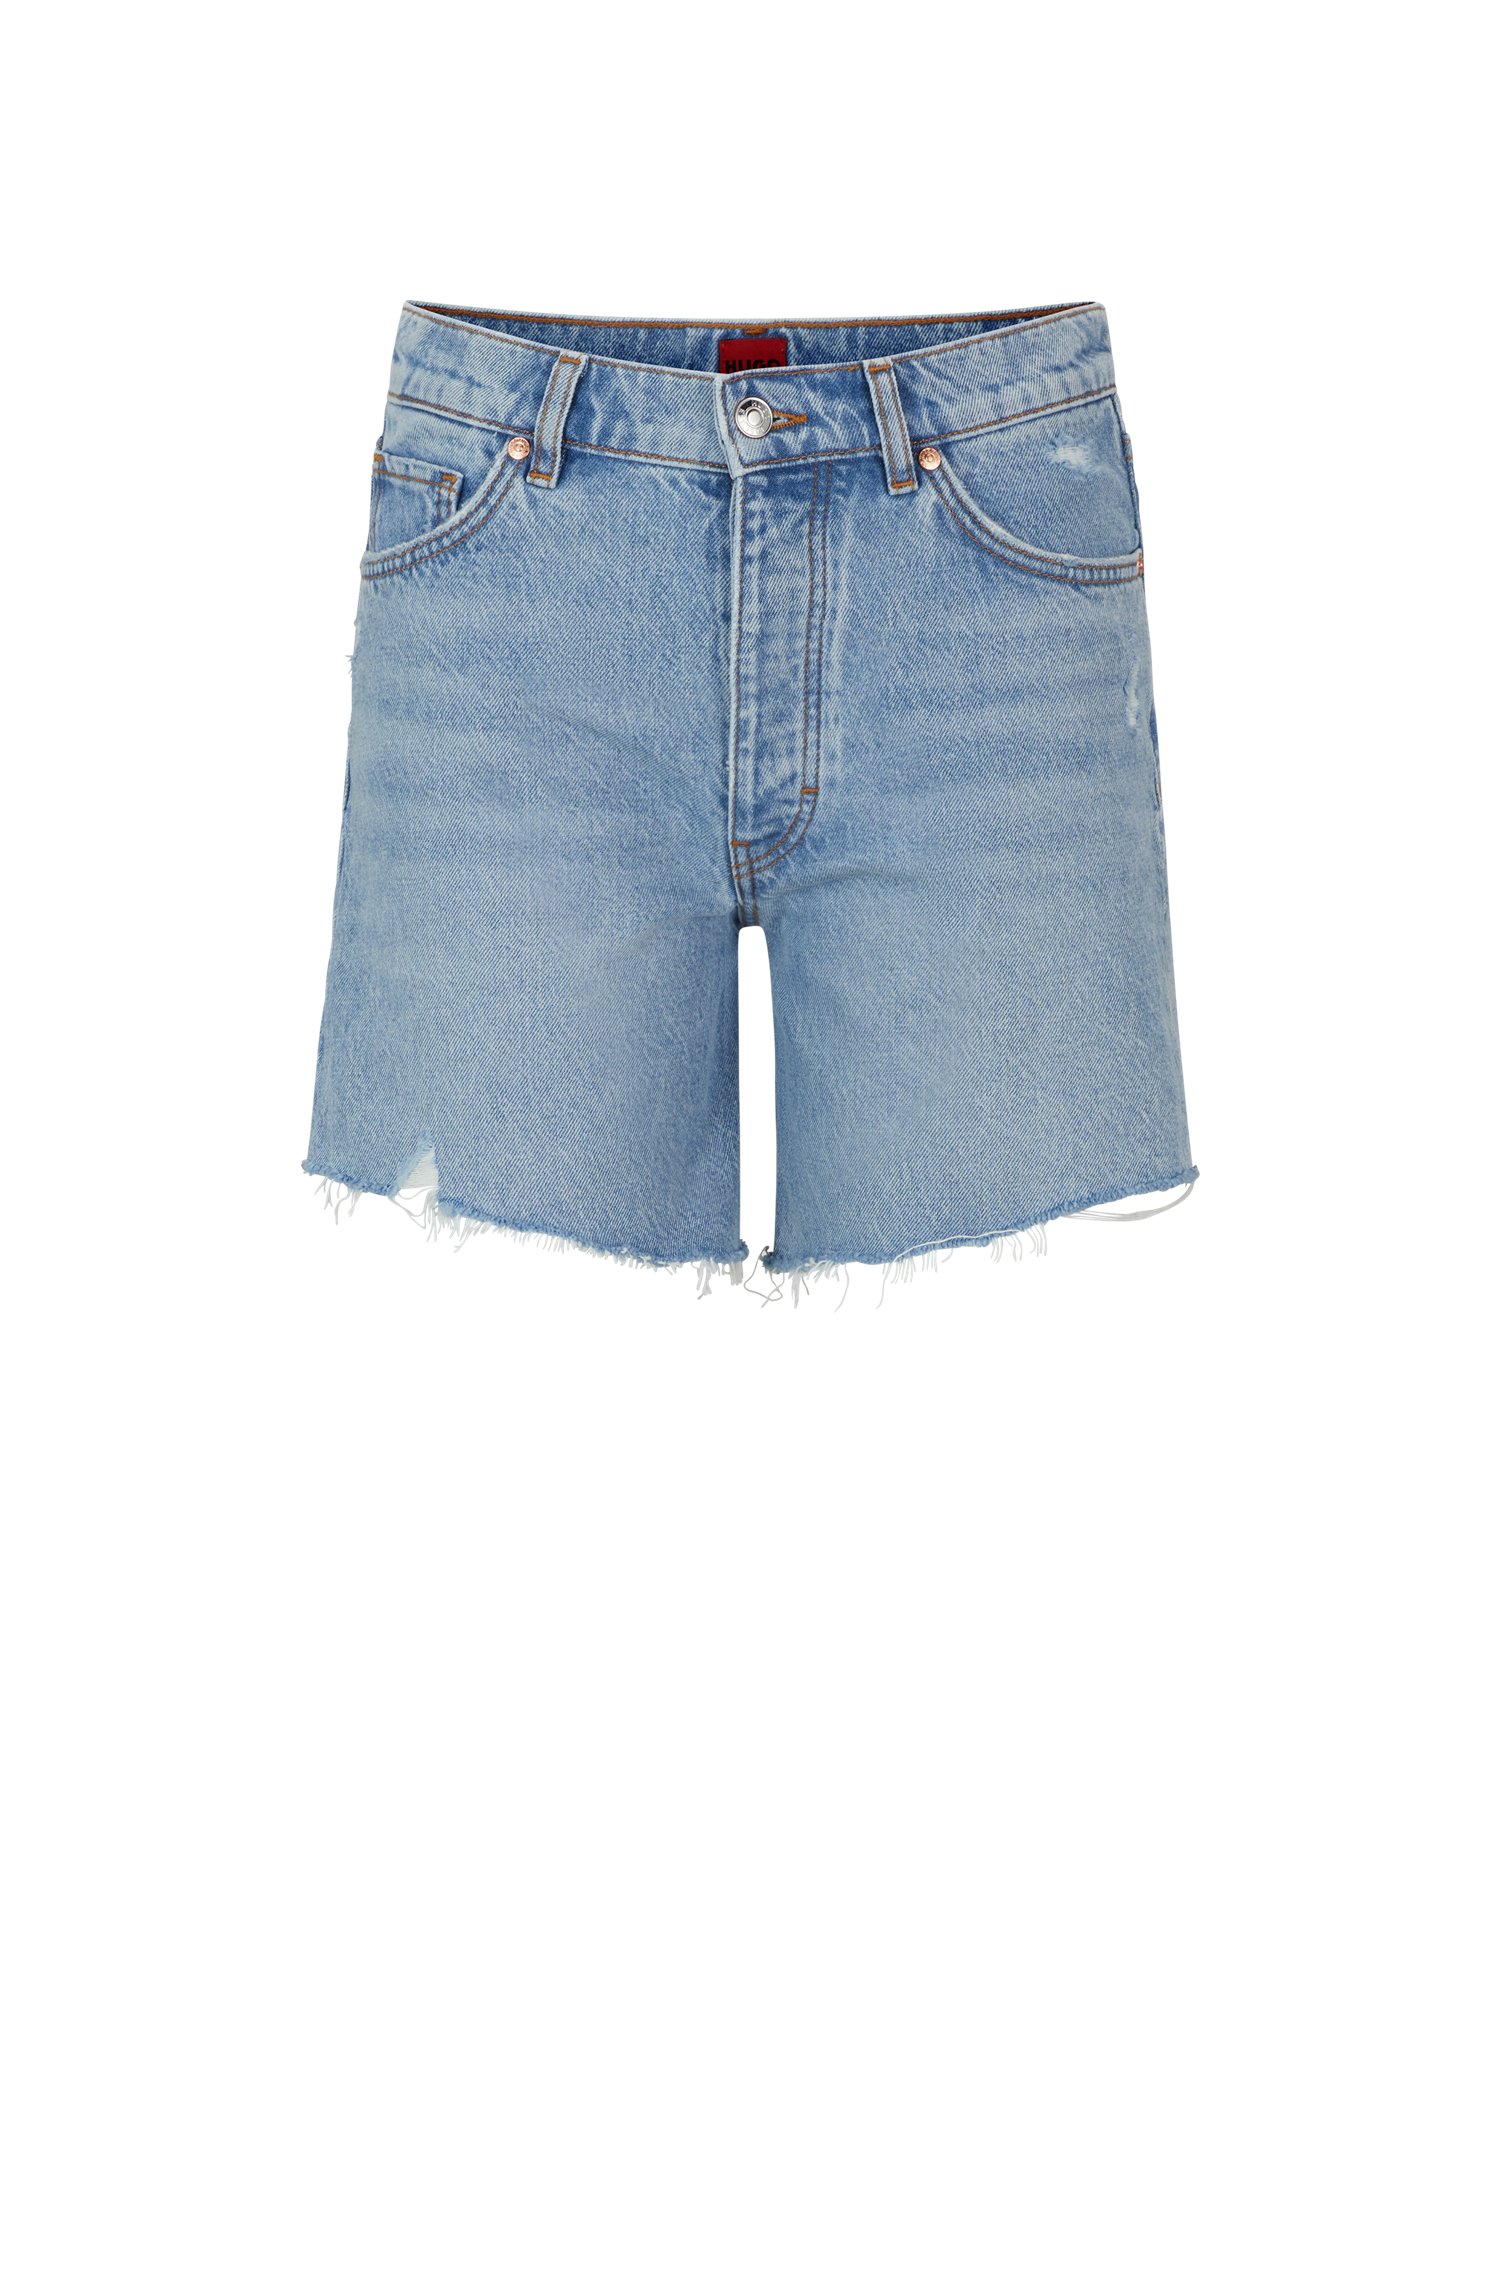 Shorts regular fit de denim azul medio desgastado